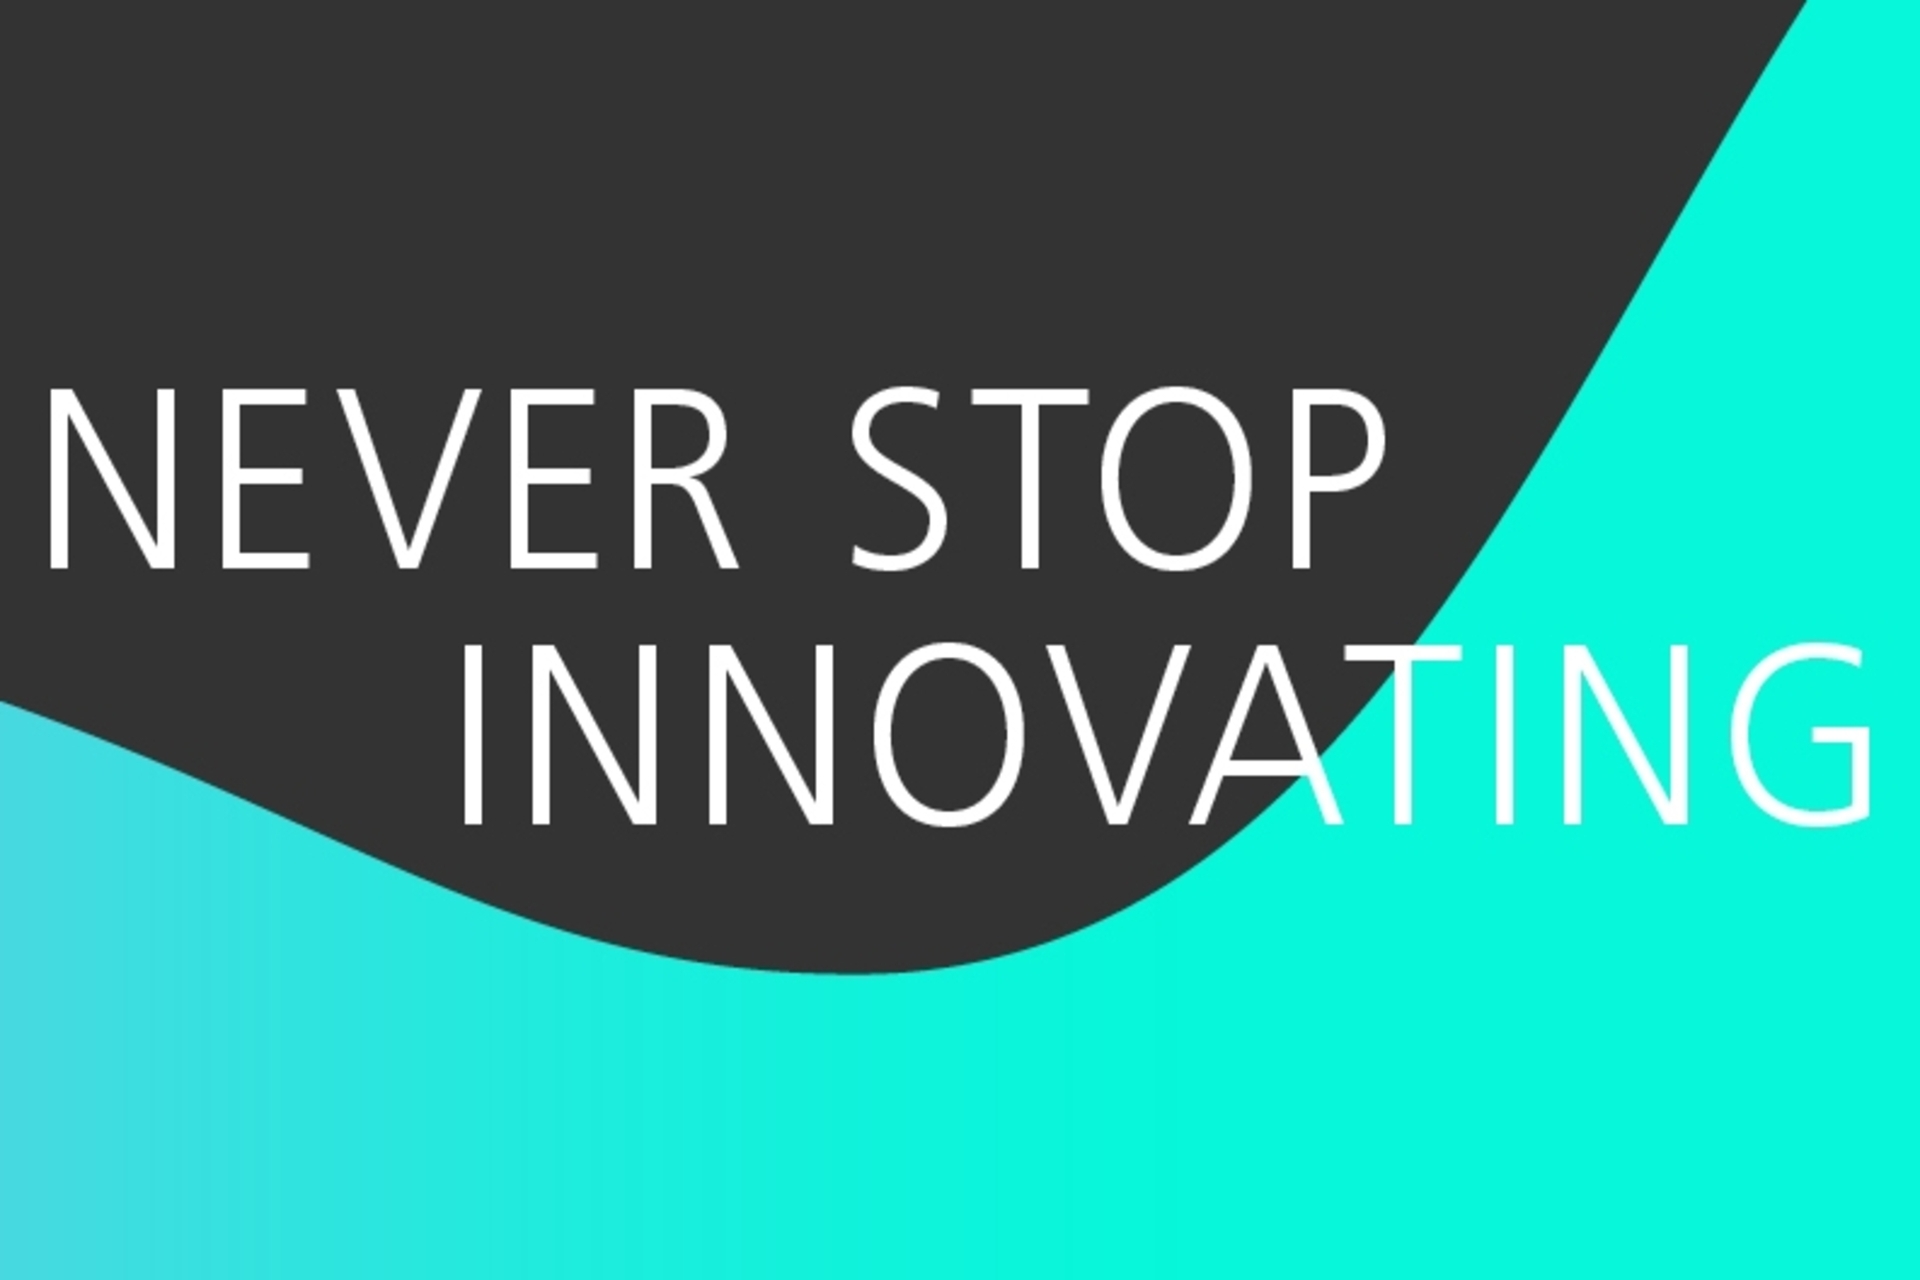 Innosuisse: la key visual dell'Agenzia svizzera per la promozione dell'innovazione